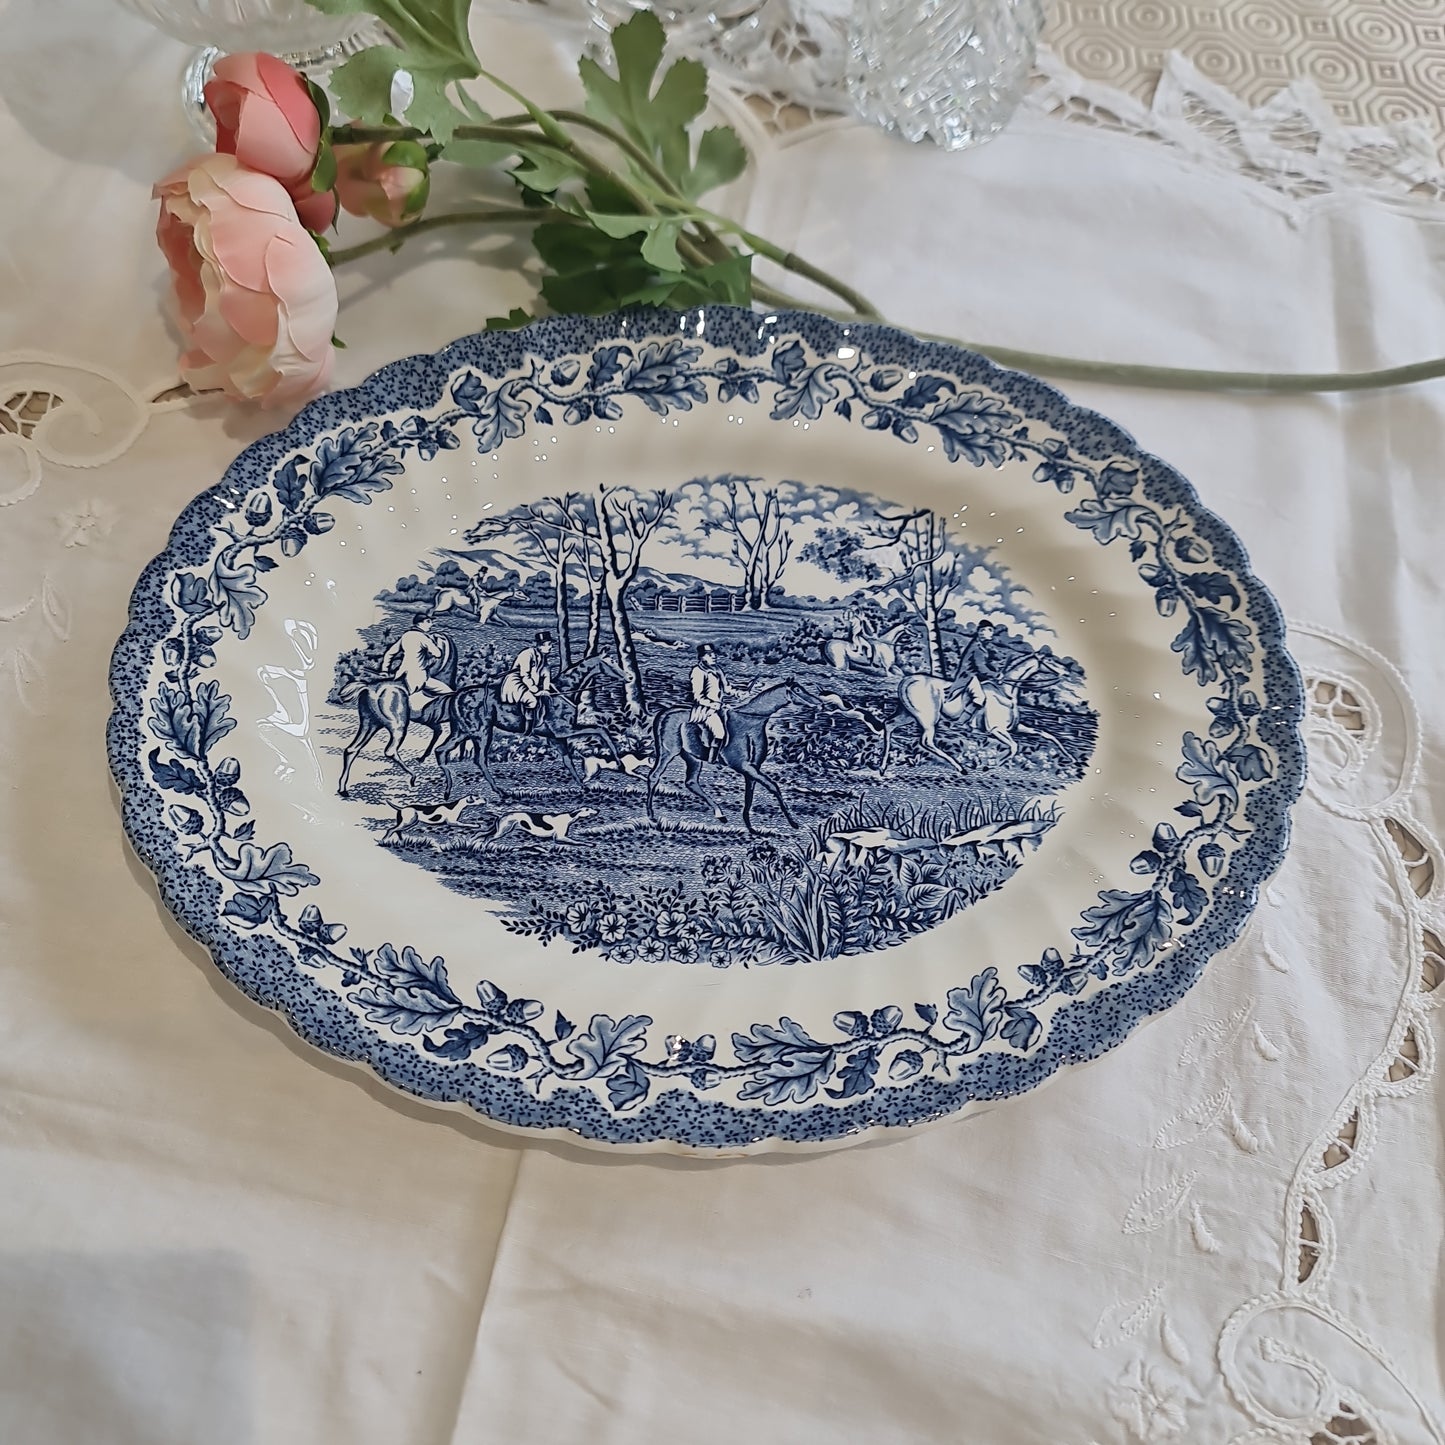 Gorgeous Myott blue and white platter